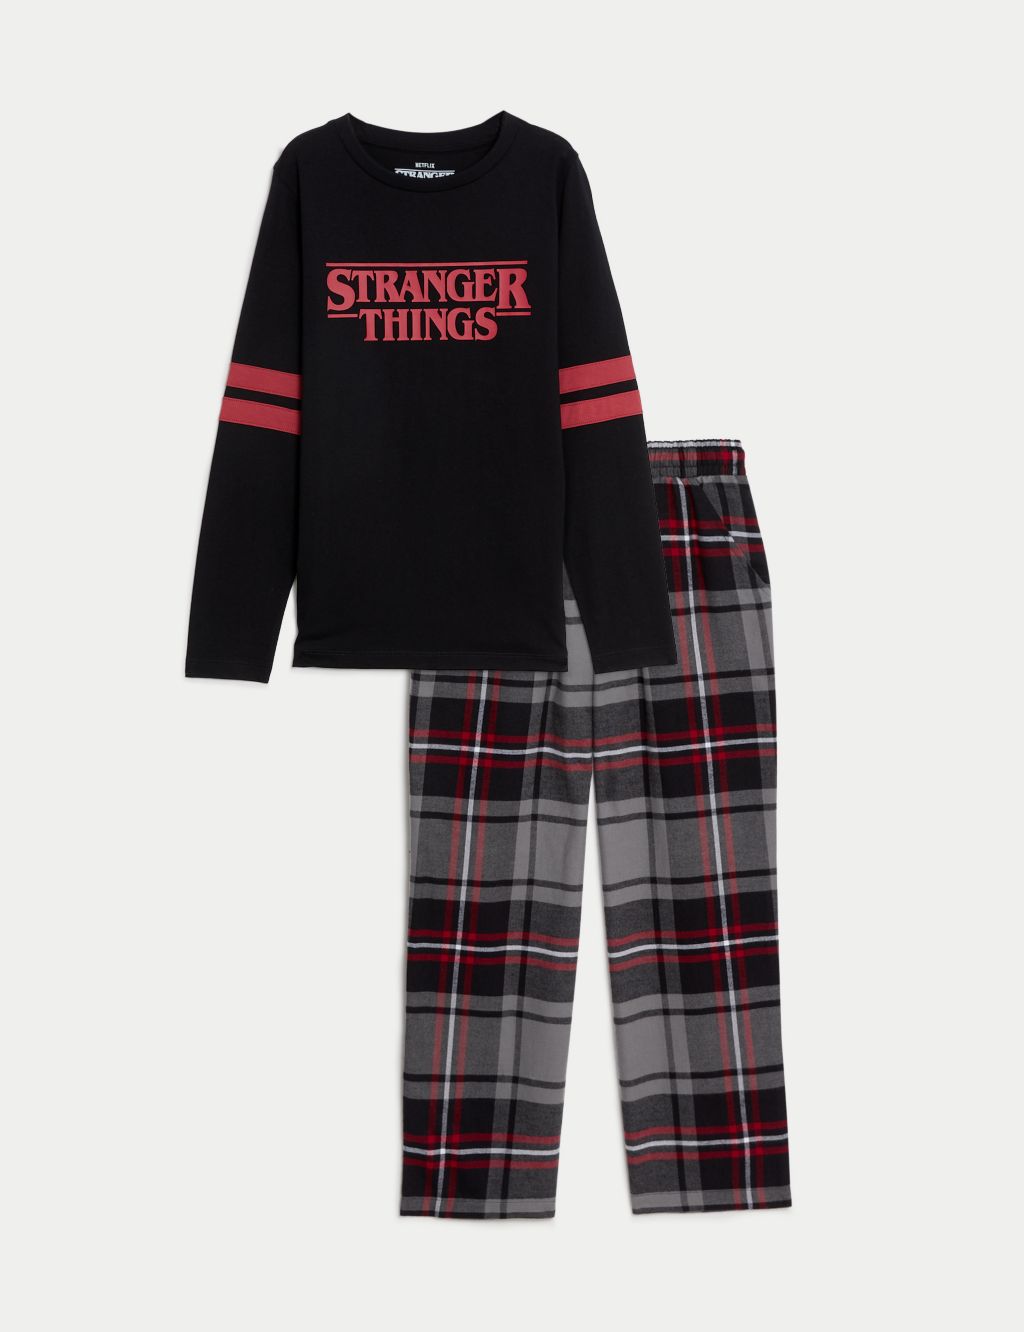 Stranger Things™ Pyjamas (6-16 Yrs) image 1